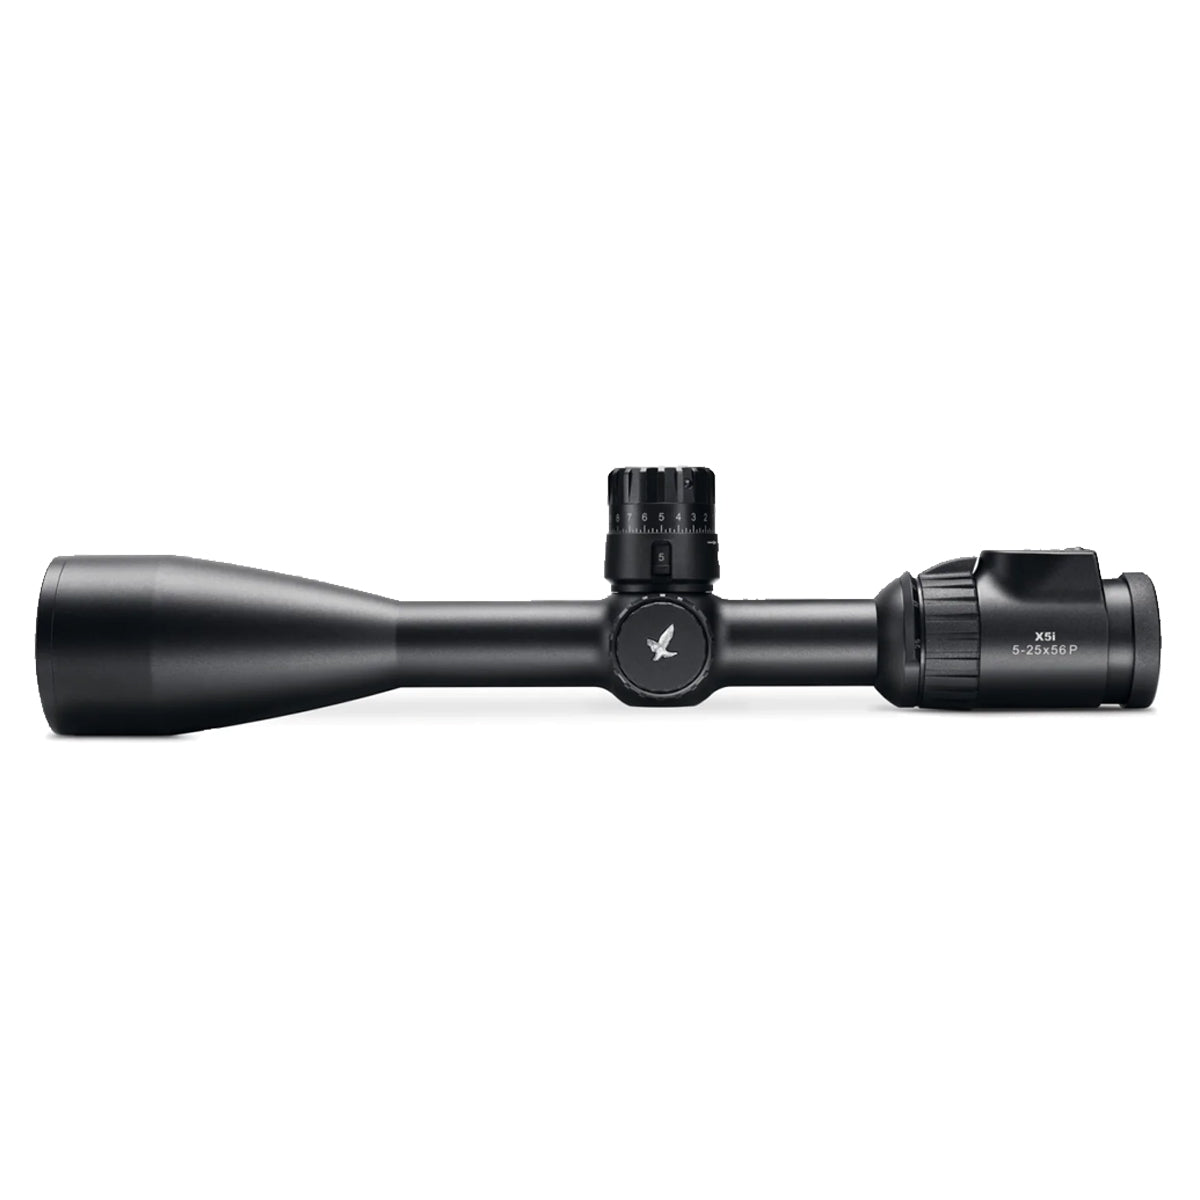 Swarovski X5i 5-25x56 - BRM-I+ Riflescope in  by GOHUNT | Swarovski Optik - GOHUNT Shop